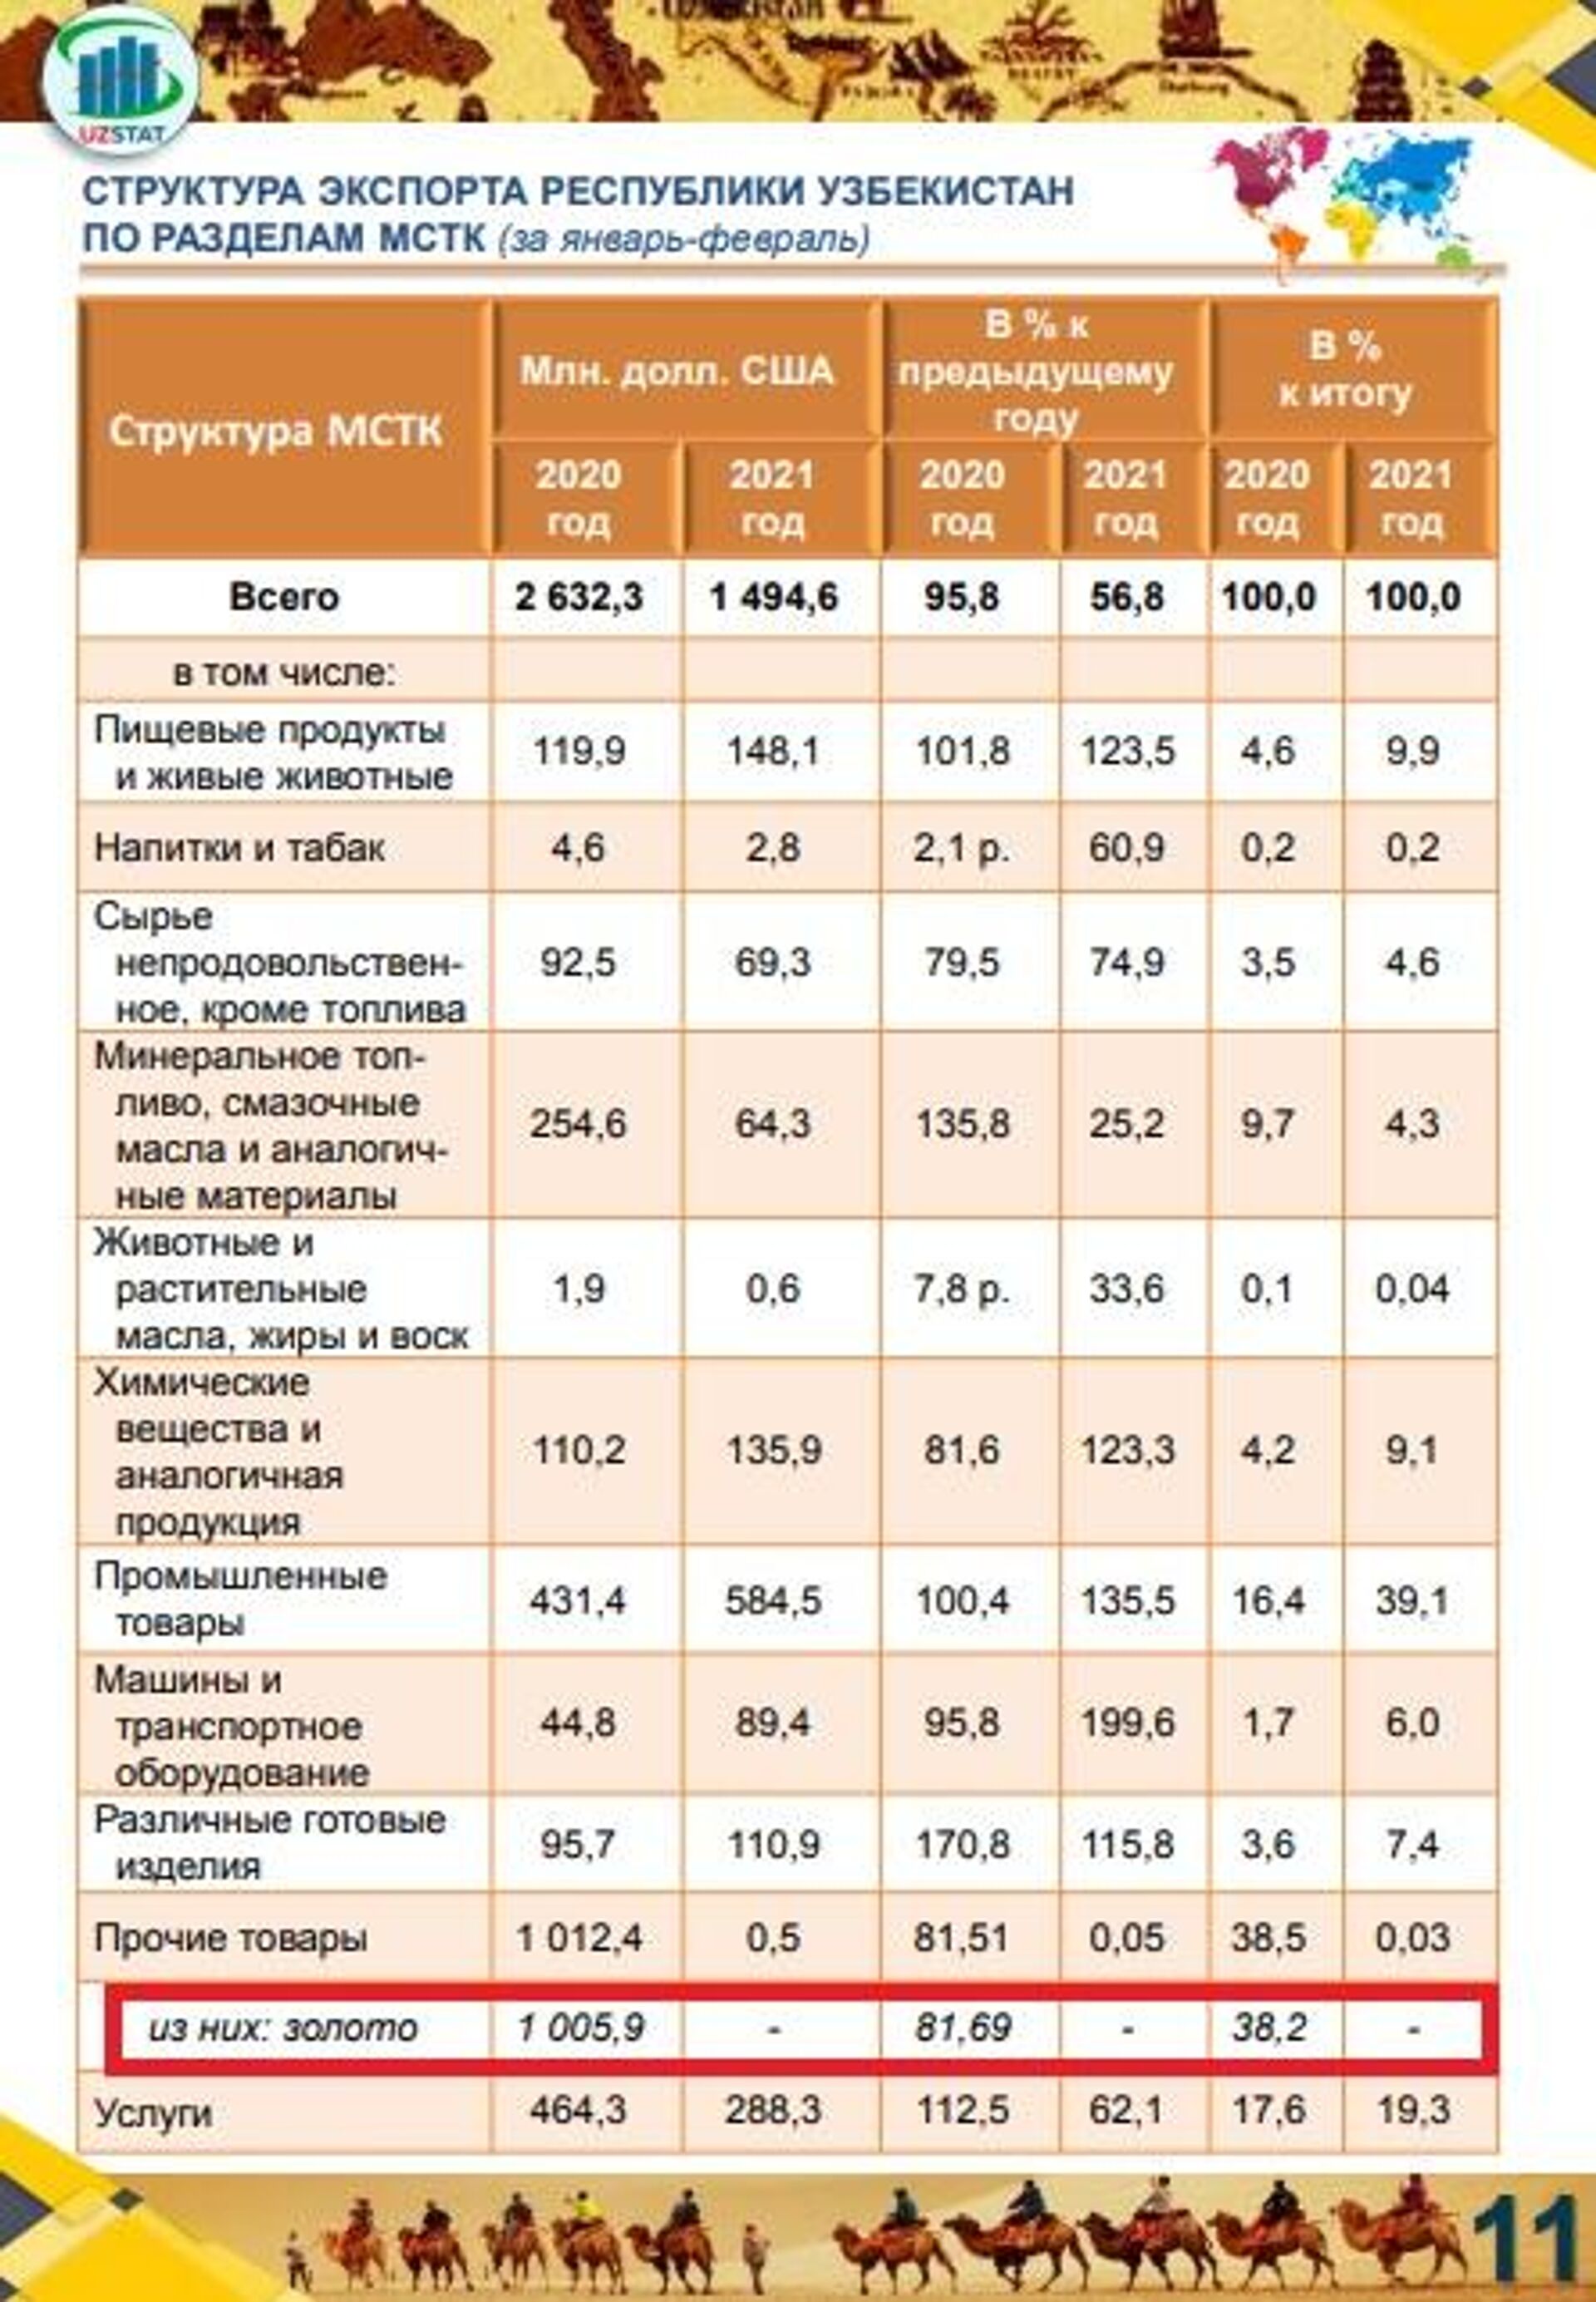 Структура экспорта Узбекистана за январь-февраль 2021 года - Sputnik Узбекистан, 1920, 31.03.2021